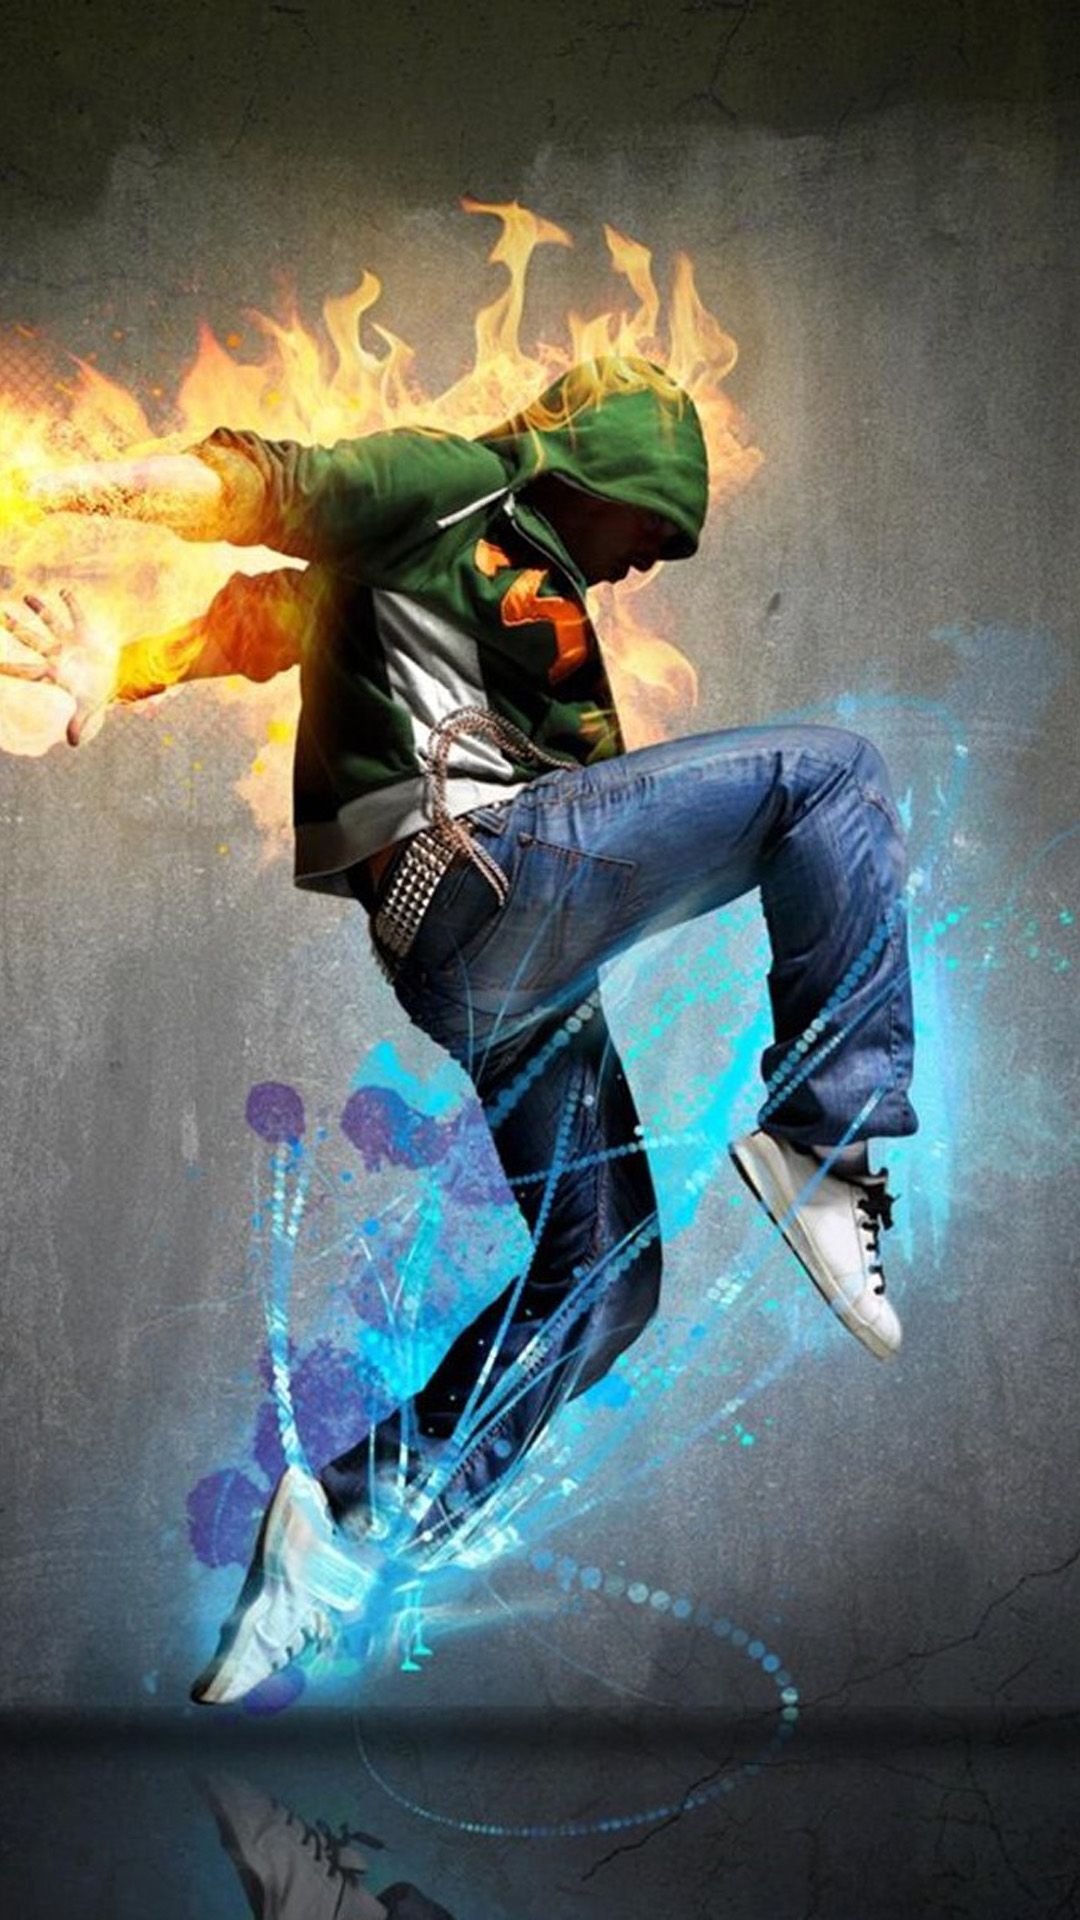 Fire Sport Dancer iPhone 6 Wallpaper Download | iPhone Wallpapers ...